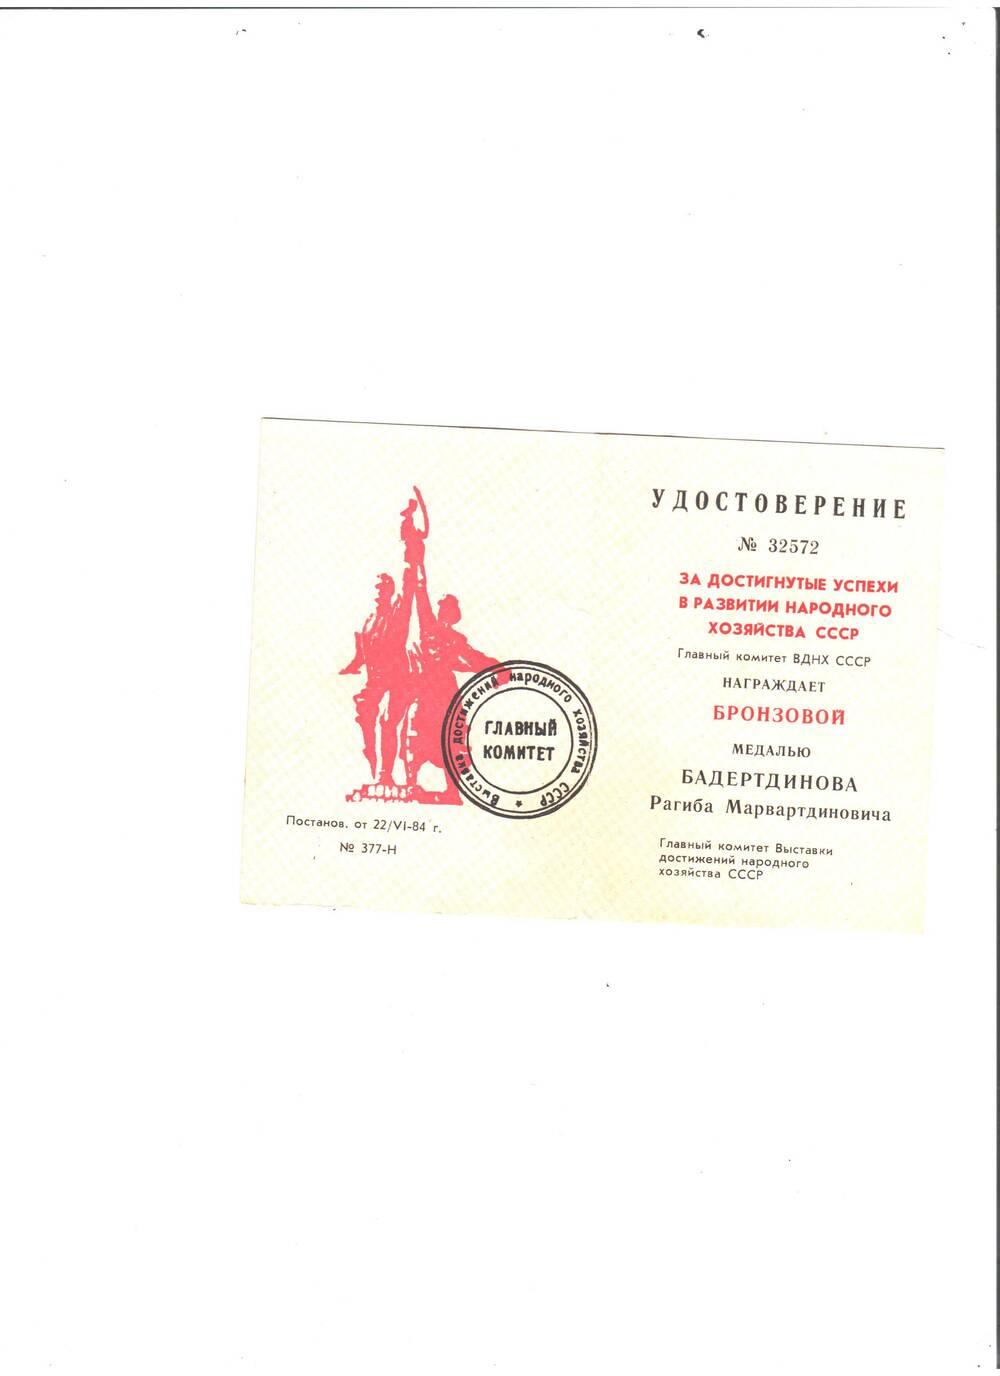 Удостоверение № 32572 за достигнутые успехи в развитии народного хоз-ва СССР на имя Бадертдинова Р.М.  О награждении бронзовой медалью (обложка синего цвета)